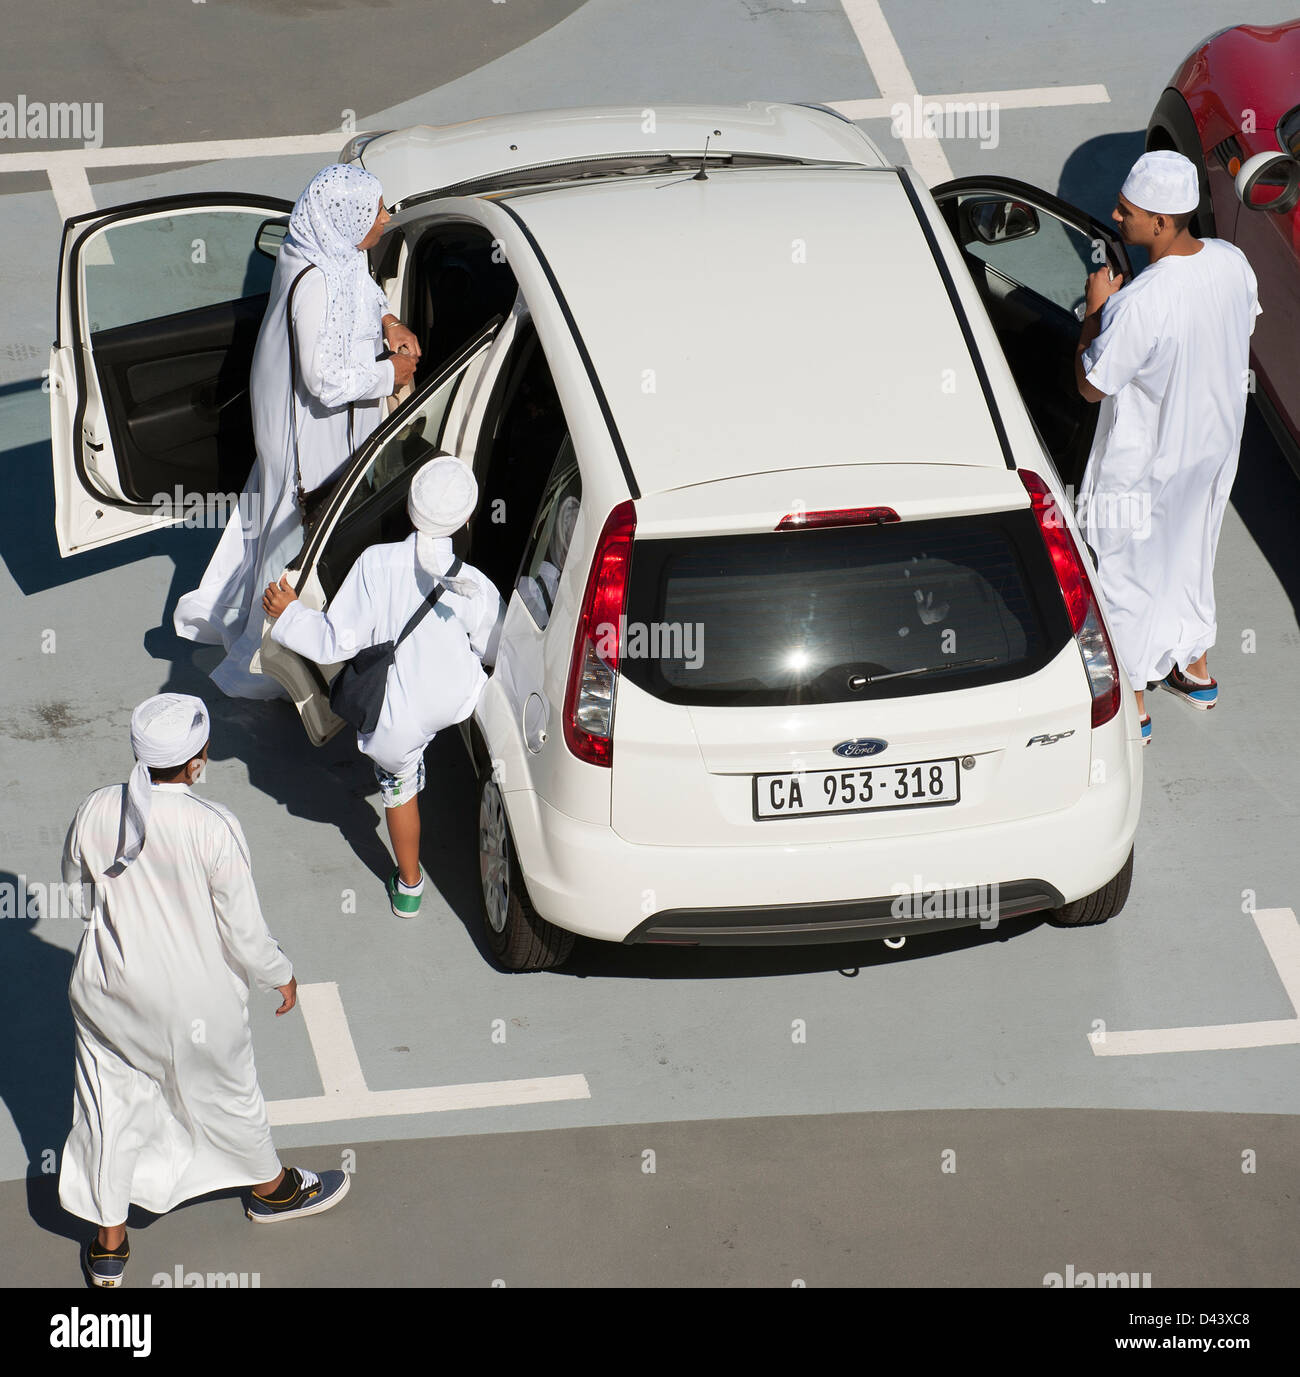 Muslimischen Familie in traditioneller weißer Kleidung zu bekommen, in einer Limousine Stockfoto